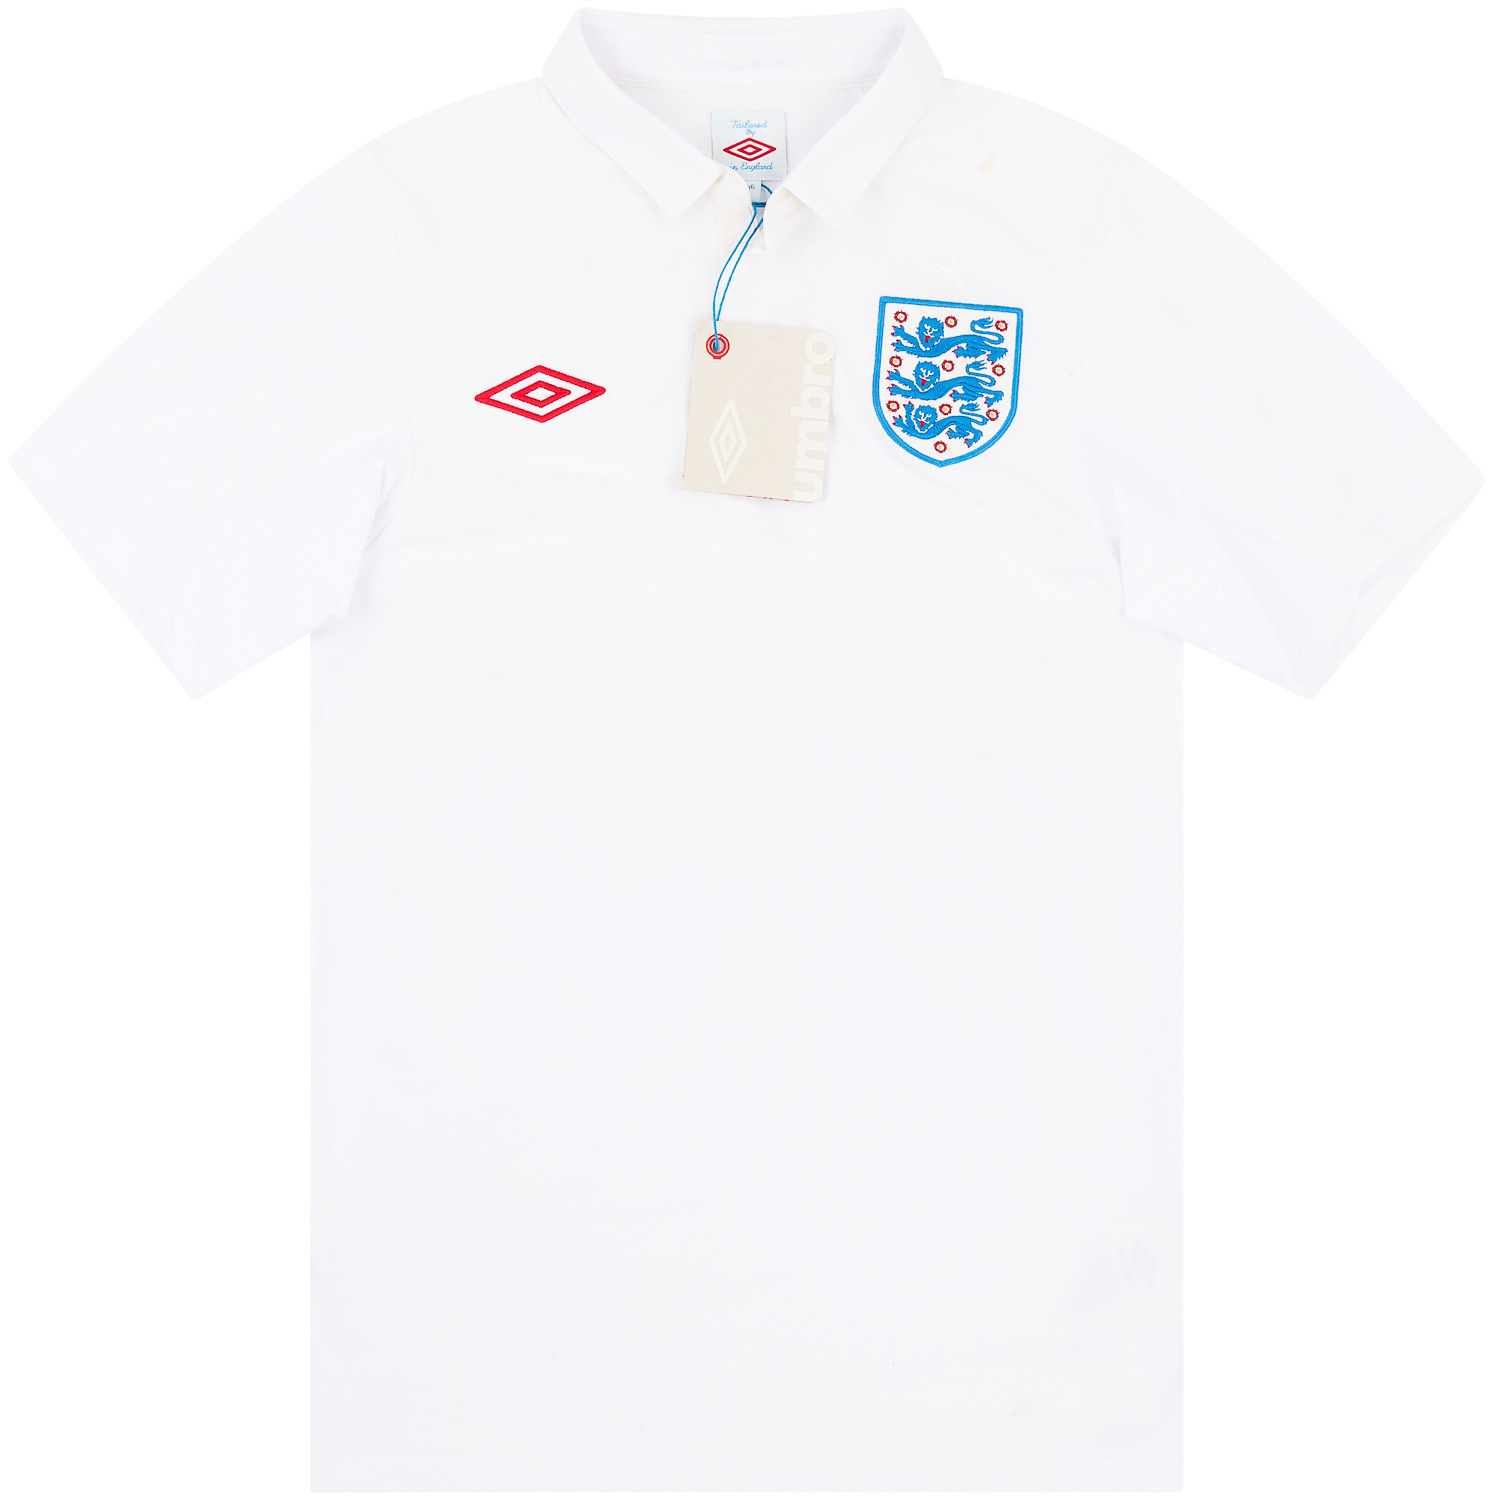 England  home shirt  (Original)